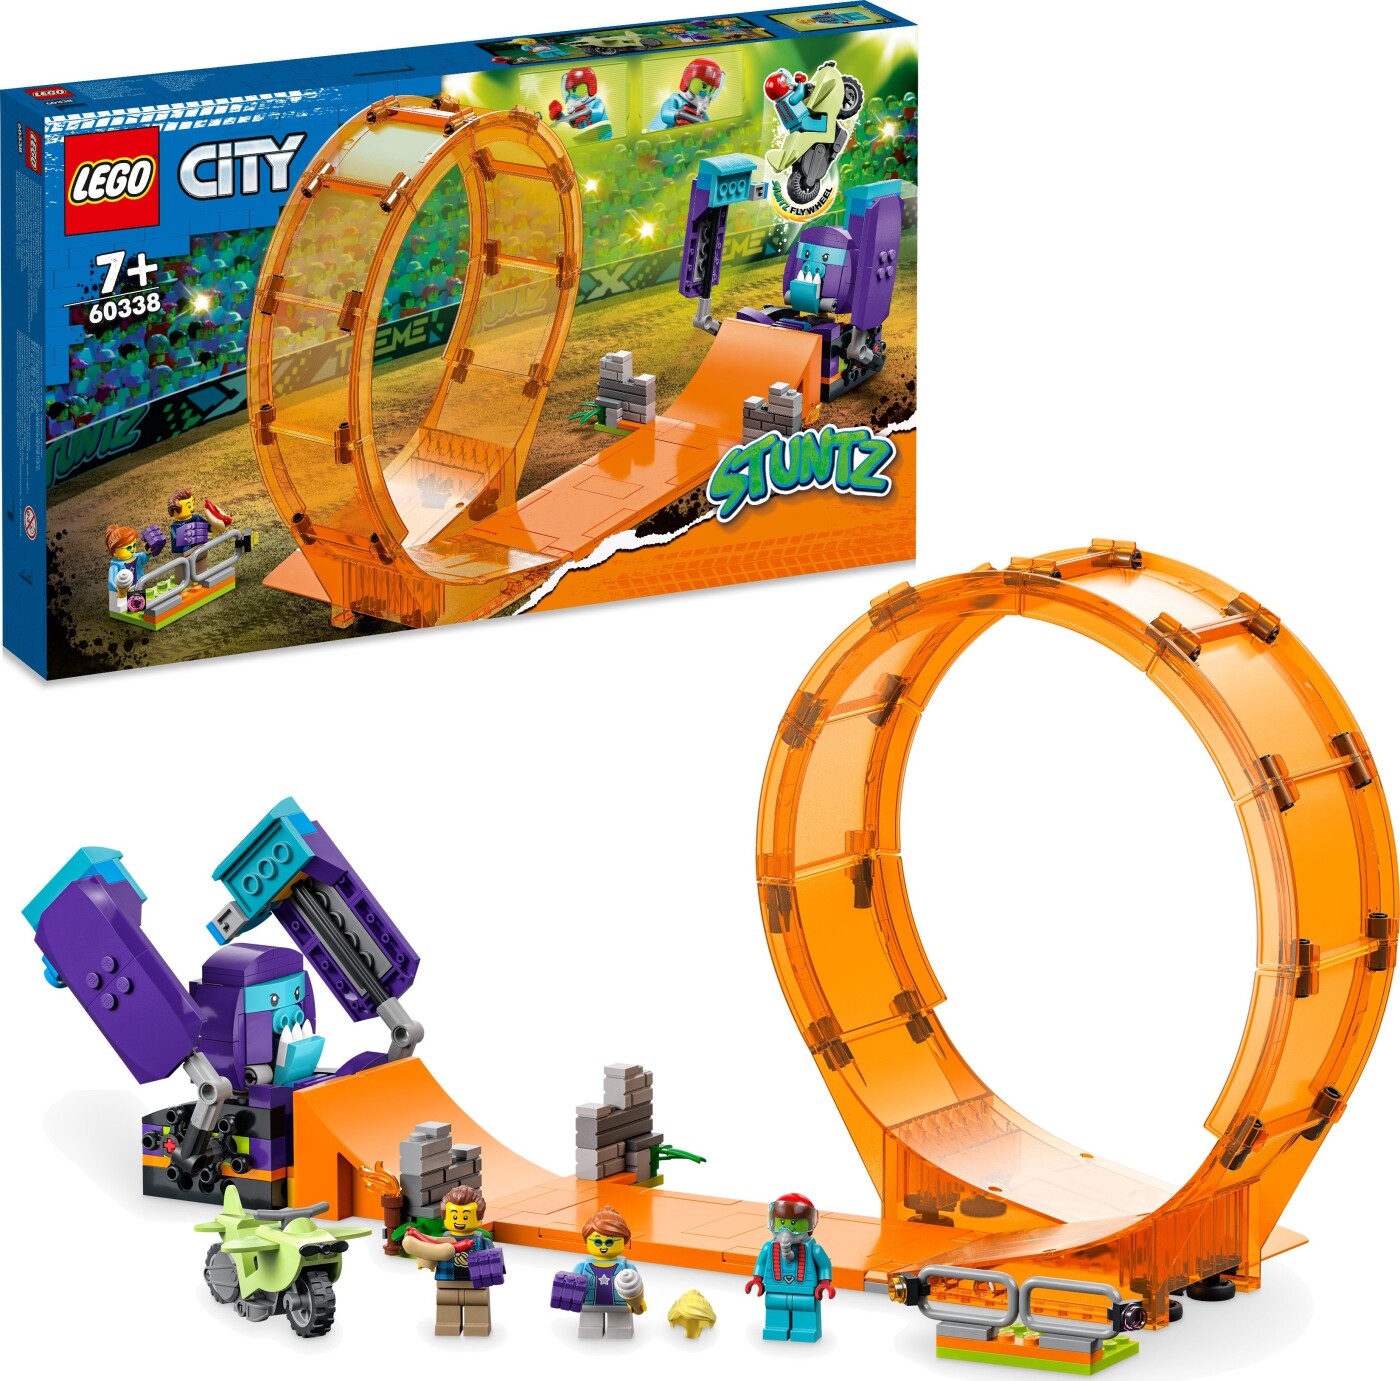 Billede af Lego City - Smadrende Chimpanse Stuntloop - 60338 hos Gucca.dk